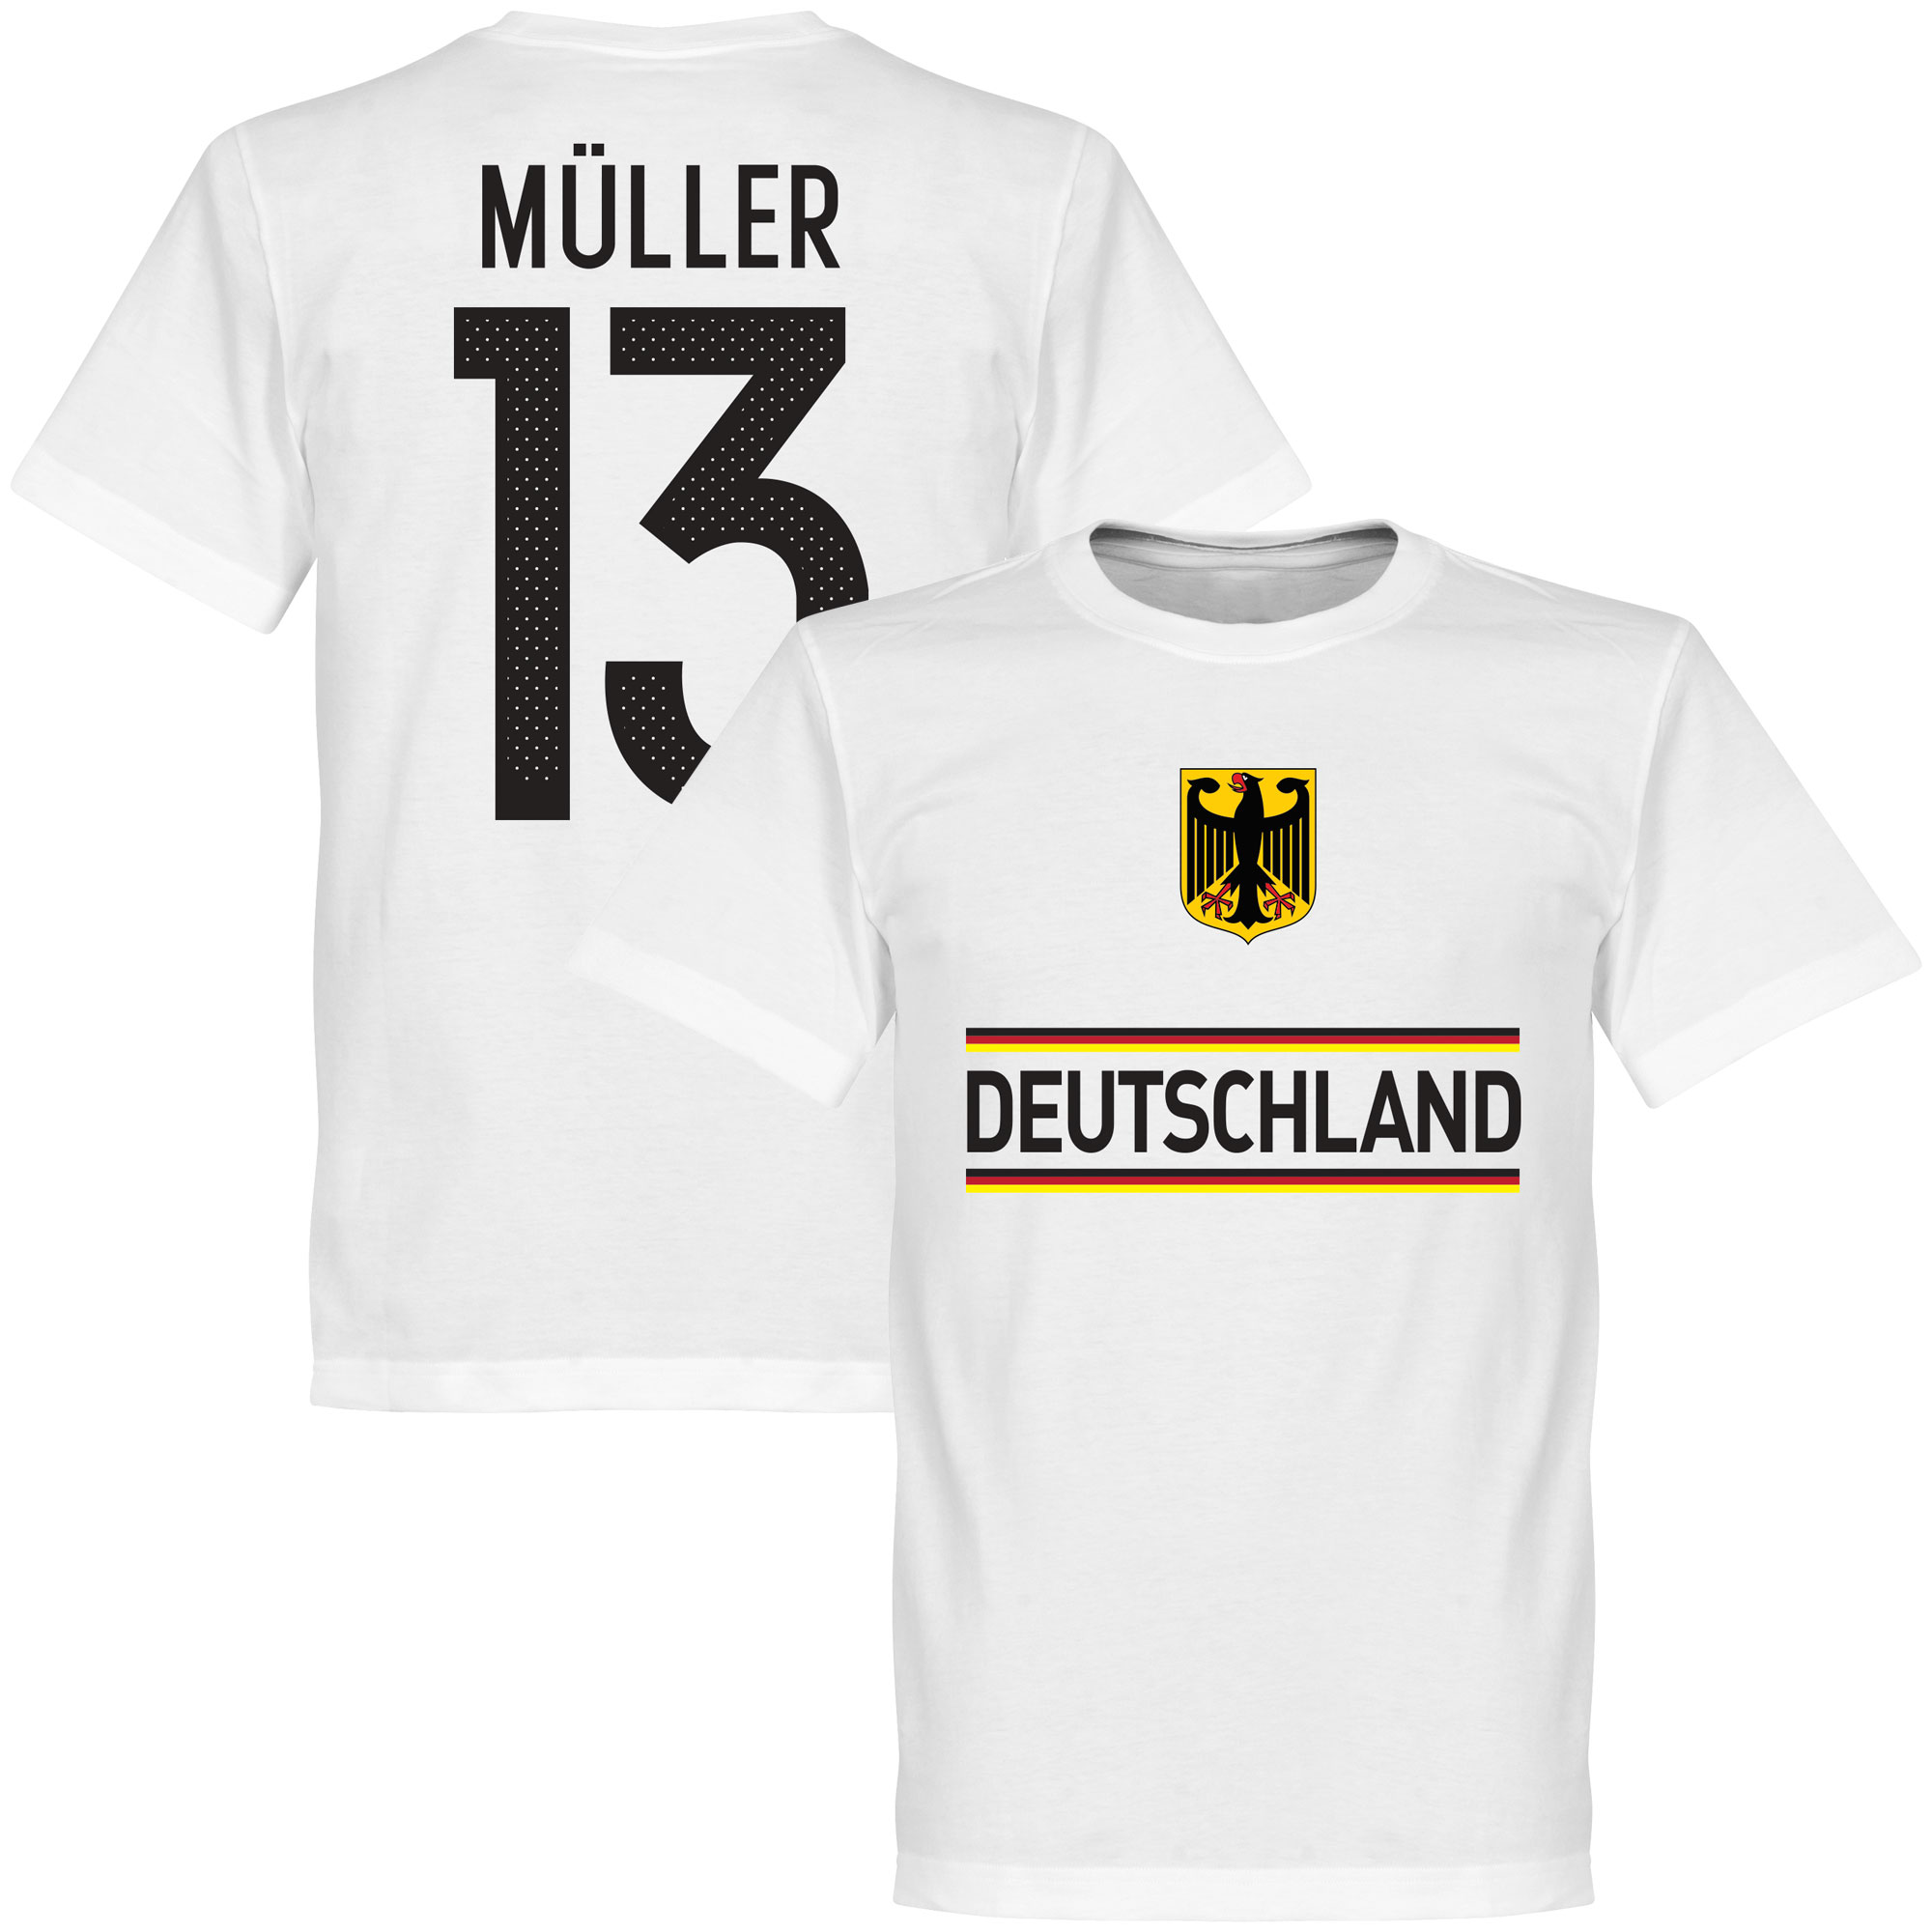 Duitsland Muller Team T-Shirt S